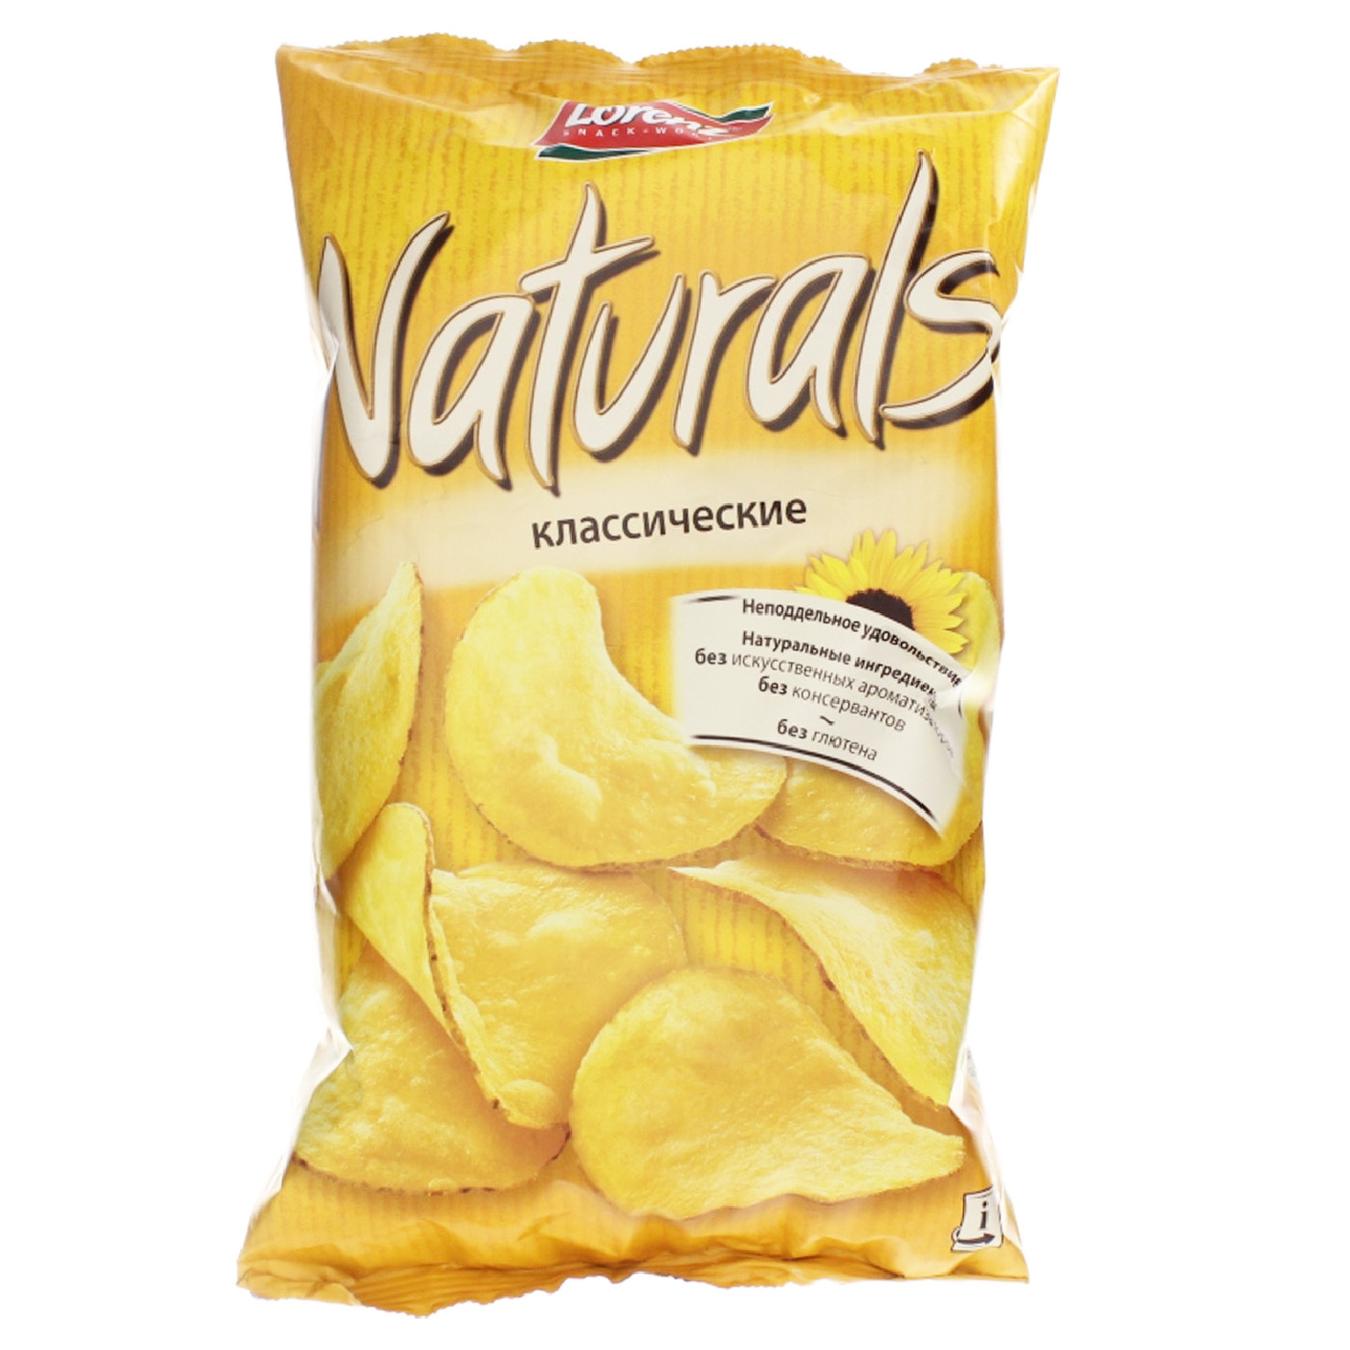 Naturals potato chips with salt 100g